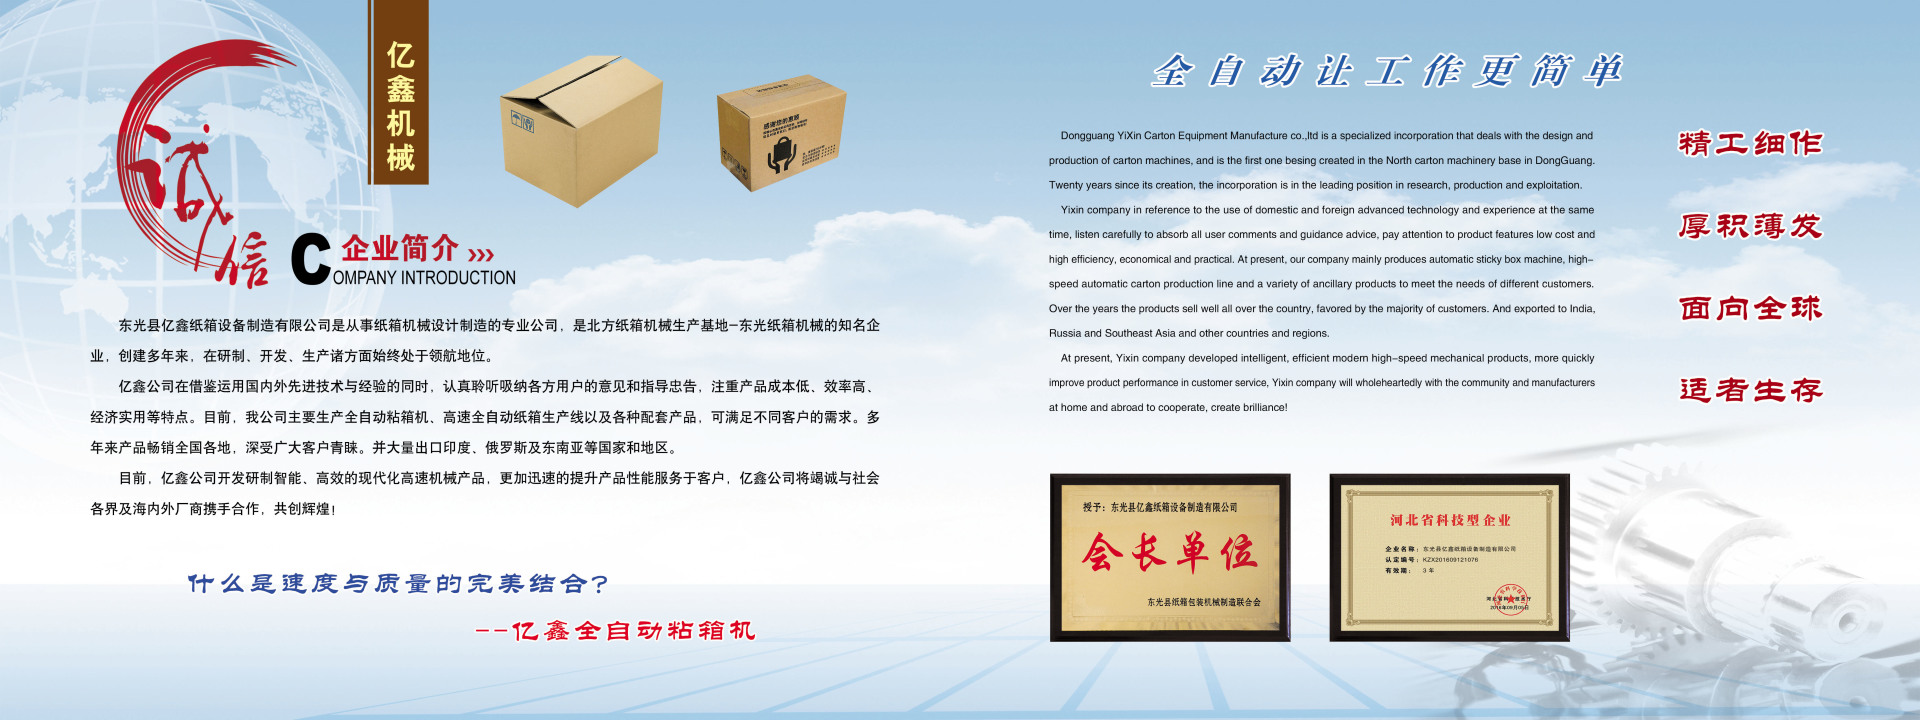 全自动粘钉一体机   家电纸箱设备  Y2200型  自动化纸箱生产设备示例图10